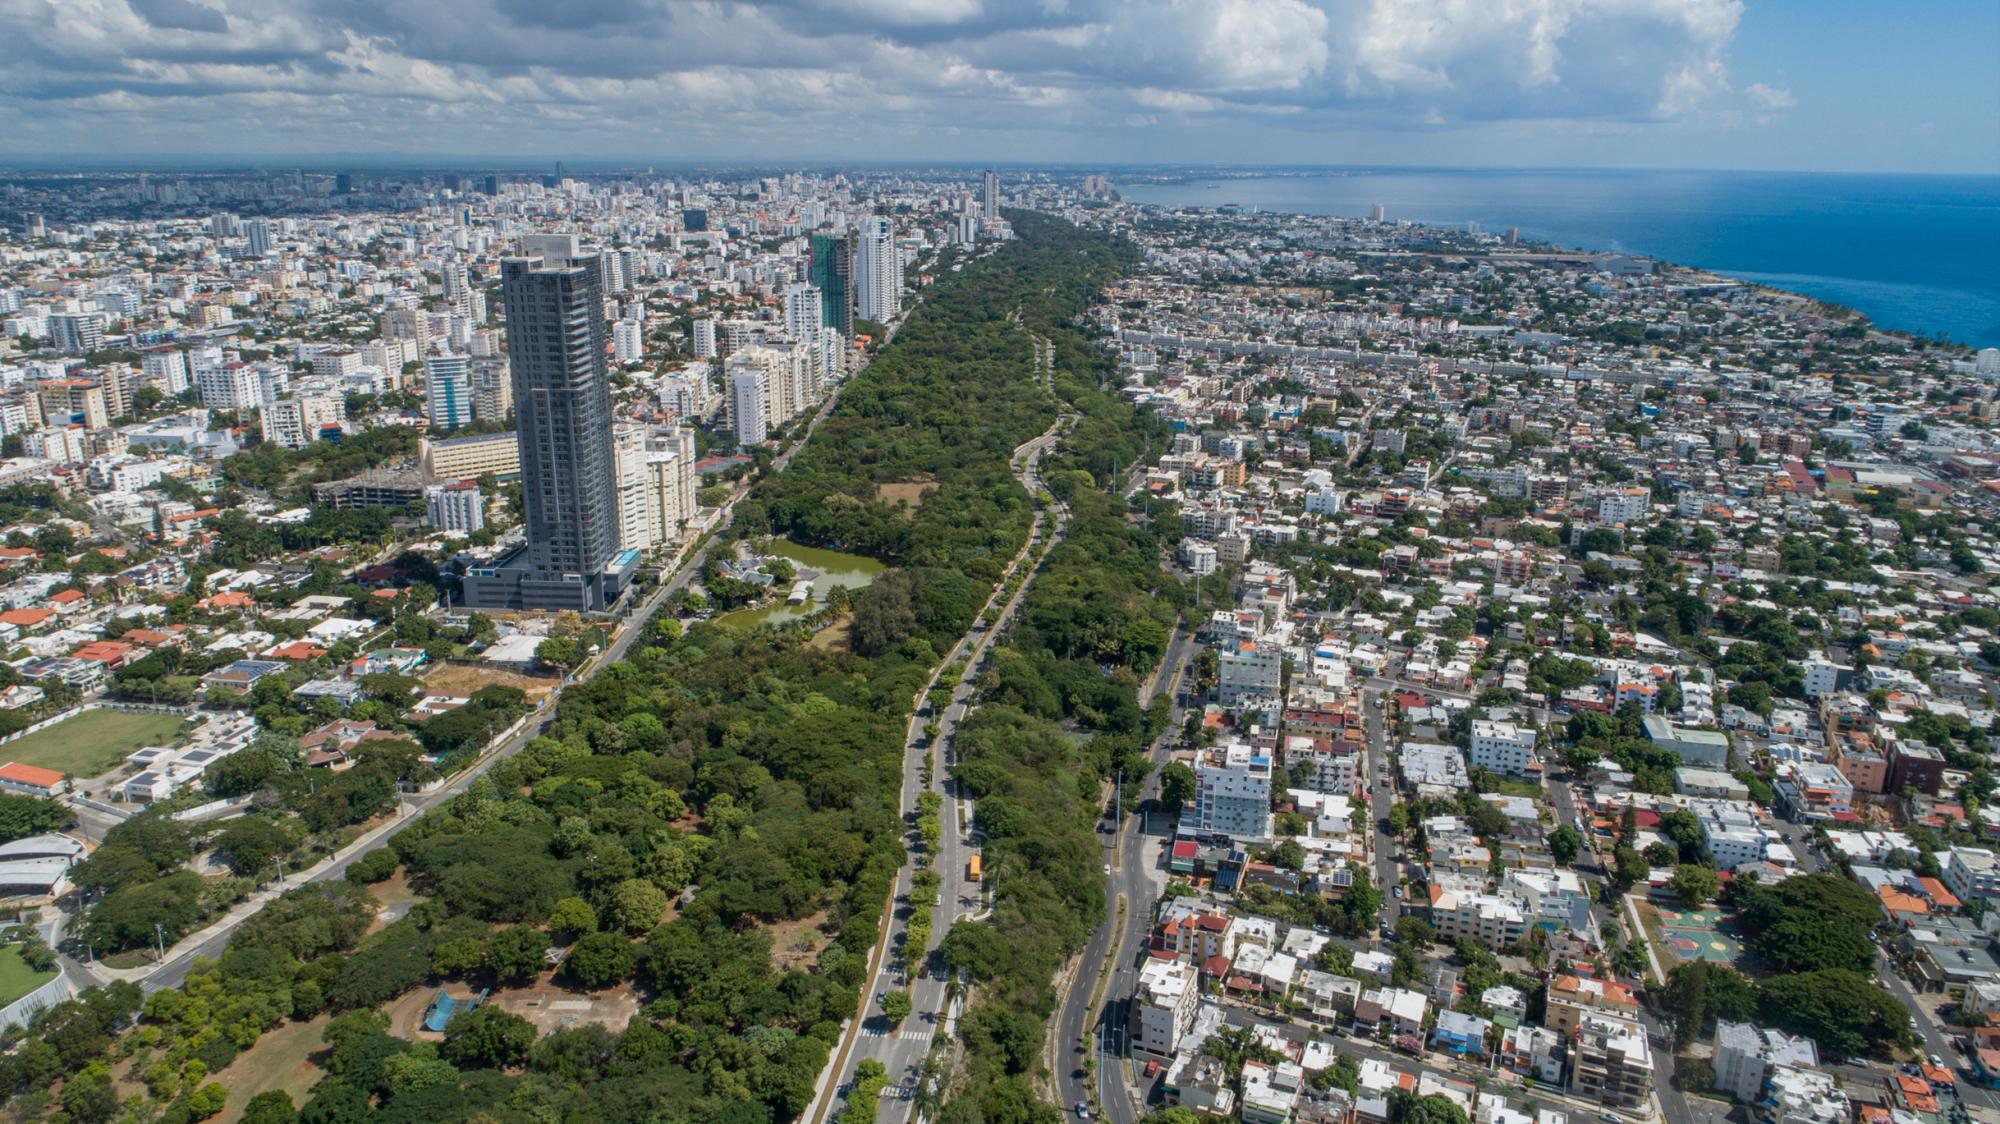 Los arquitectos Eugenio Pérez Montás y Eduardo Selman propusieron  ampliar la avenida Anacaona tomando 10 metros del parque Mirador Sur en algunos tramos, generando rechazo en redes sociales y algunos representantes institucionales.